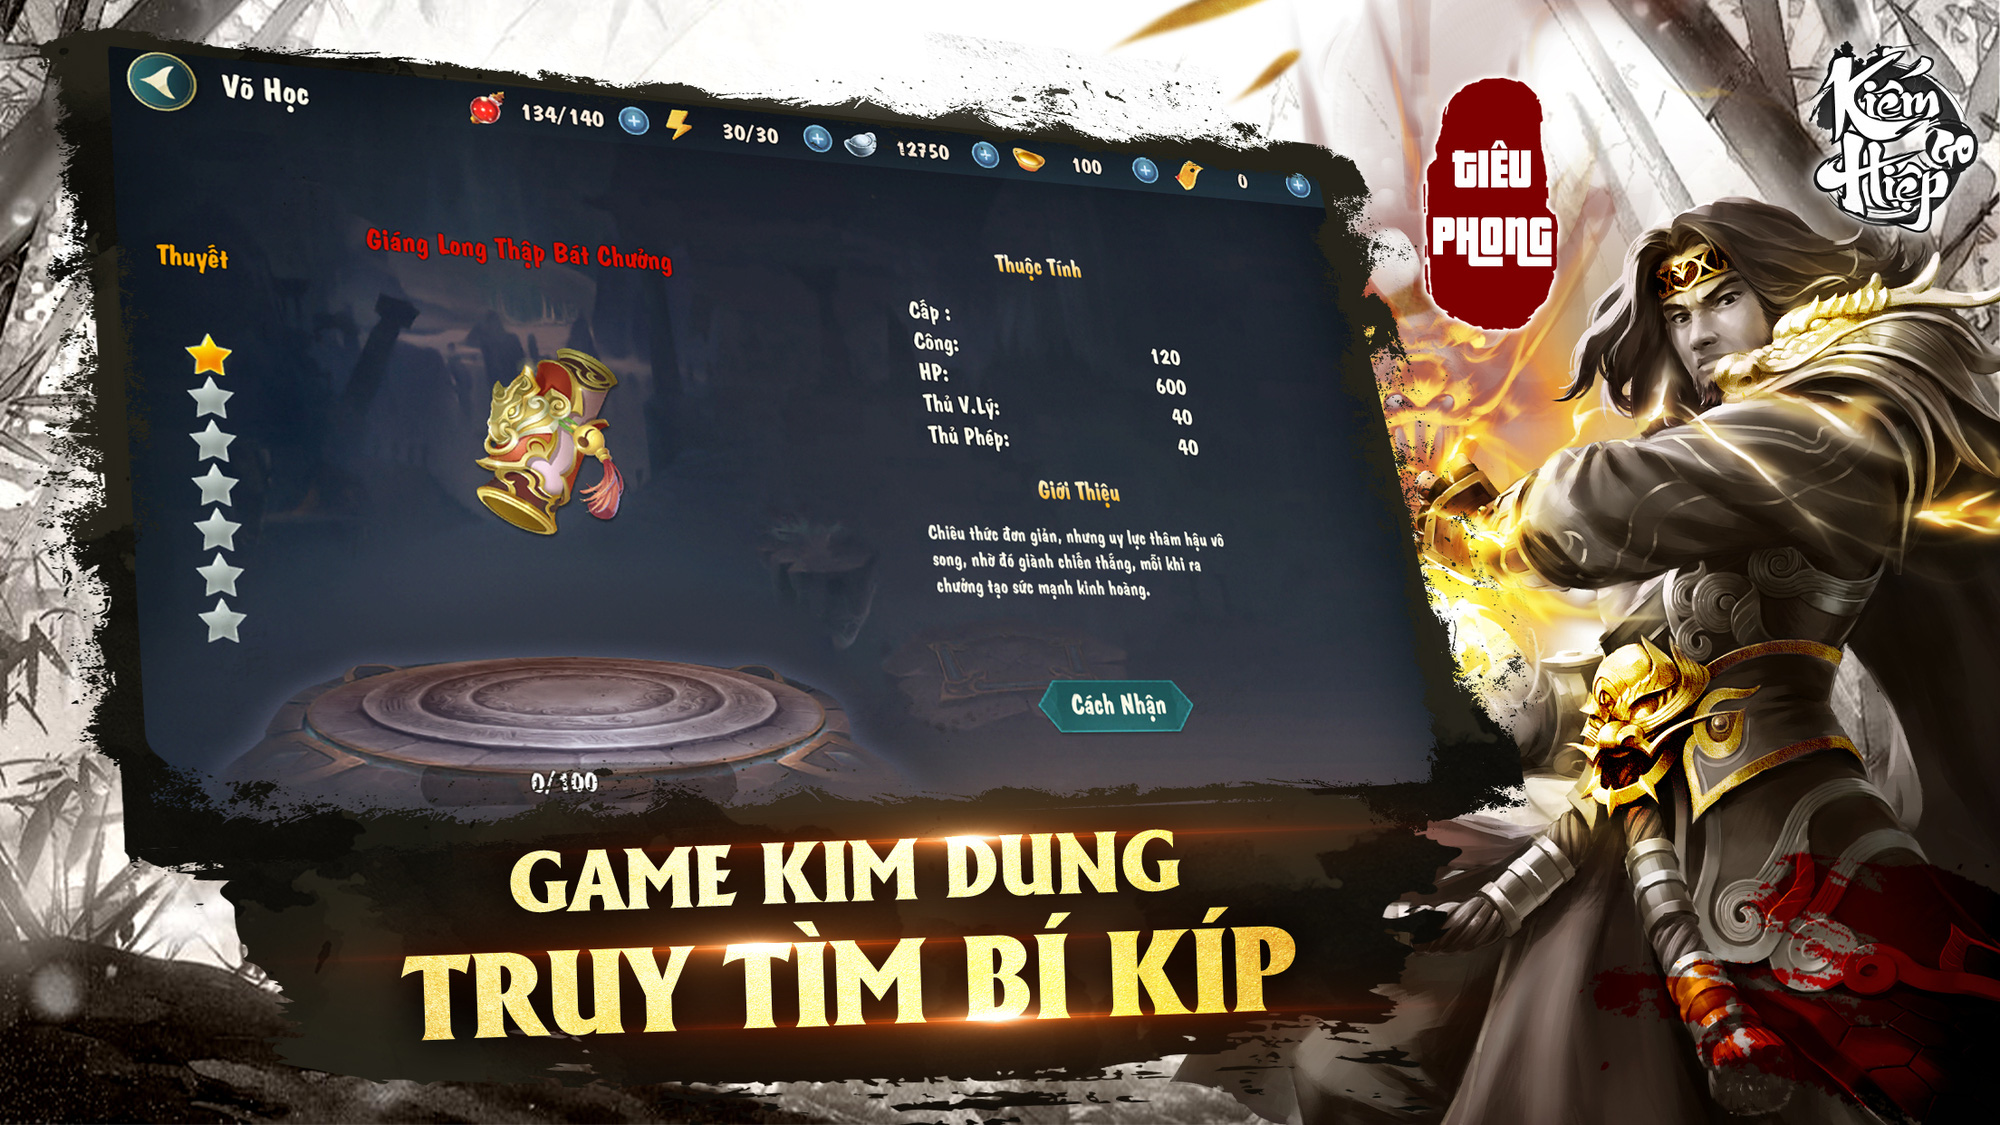 Game kiếm hiệp né chiêu chuẩn vị Kim Dung - Kiếm Hiệp GO khai mở Landing, ấn định ra mắt 10/11/2021 - Ảnh 9.